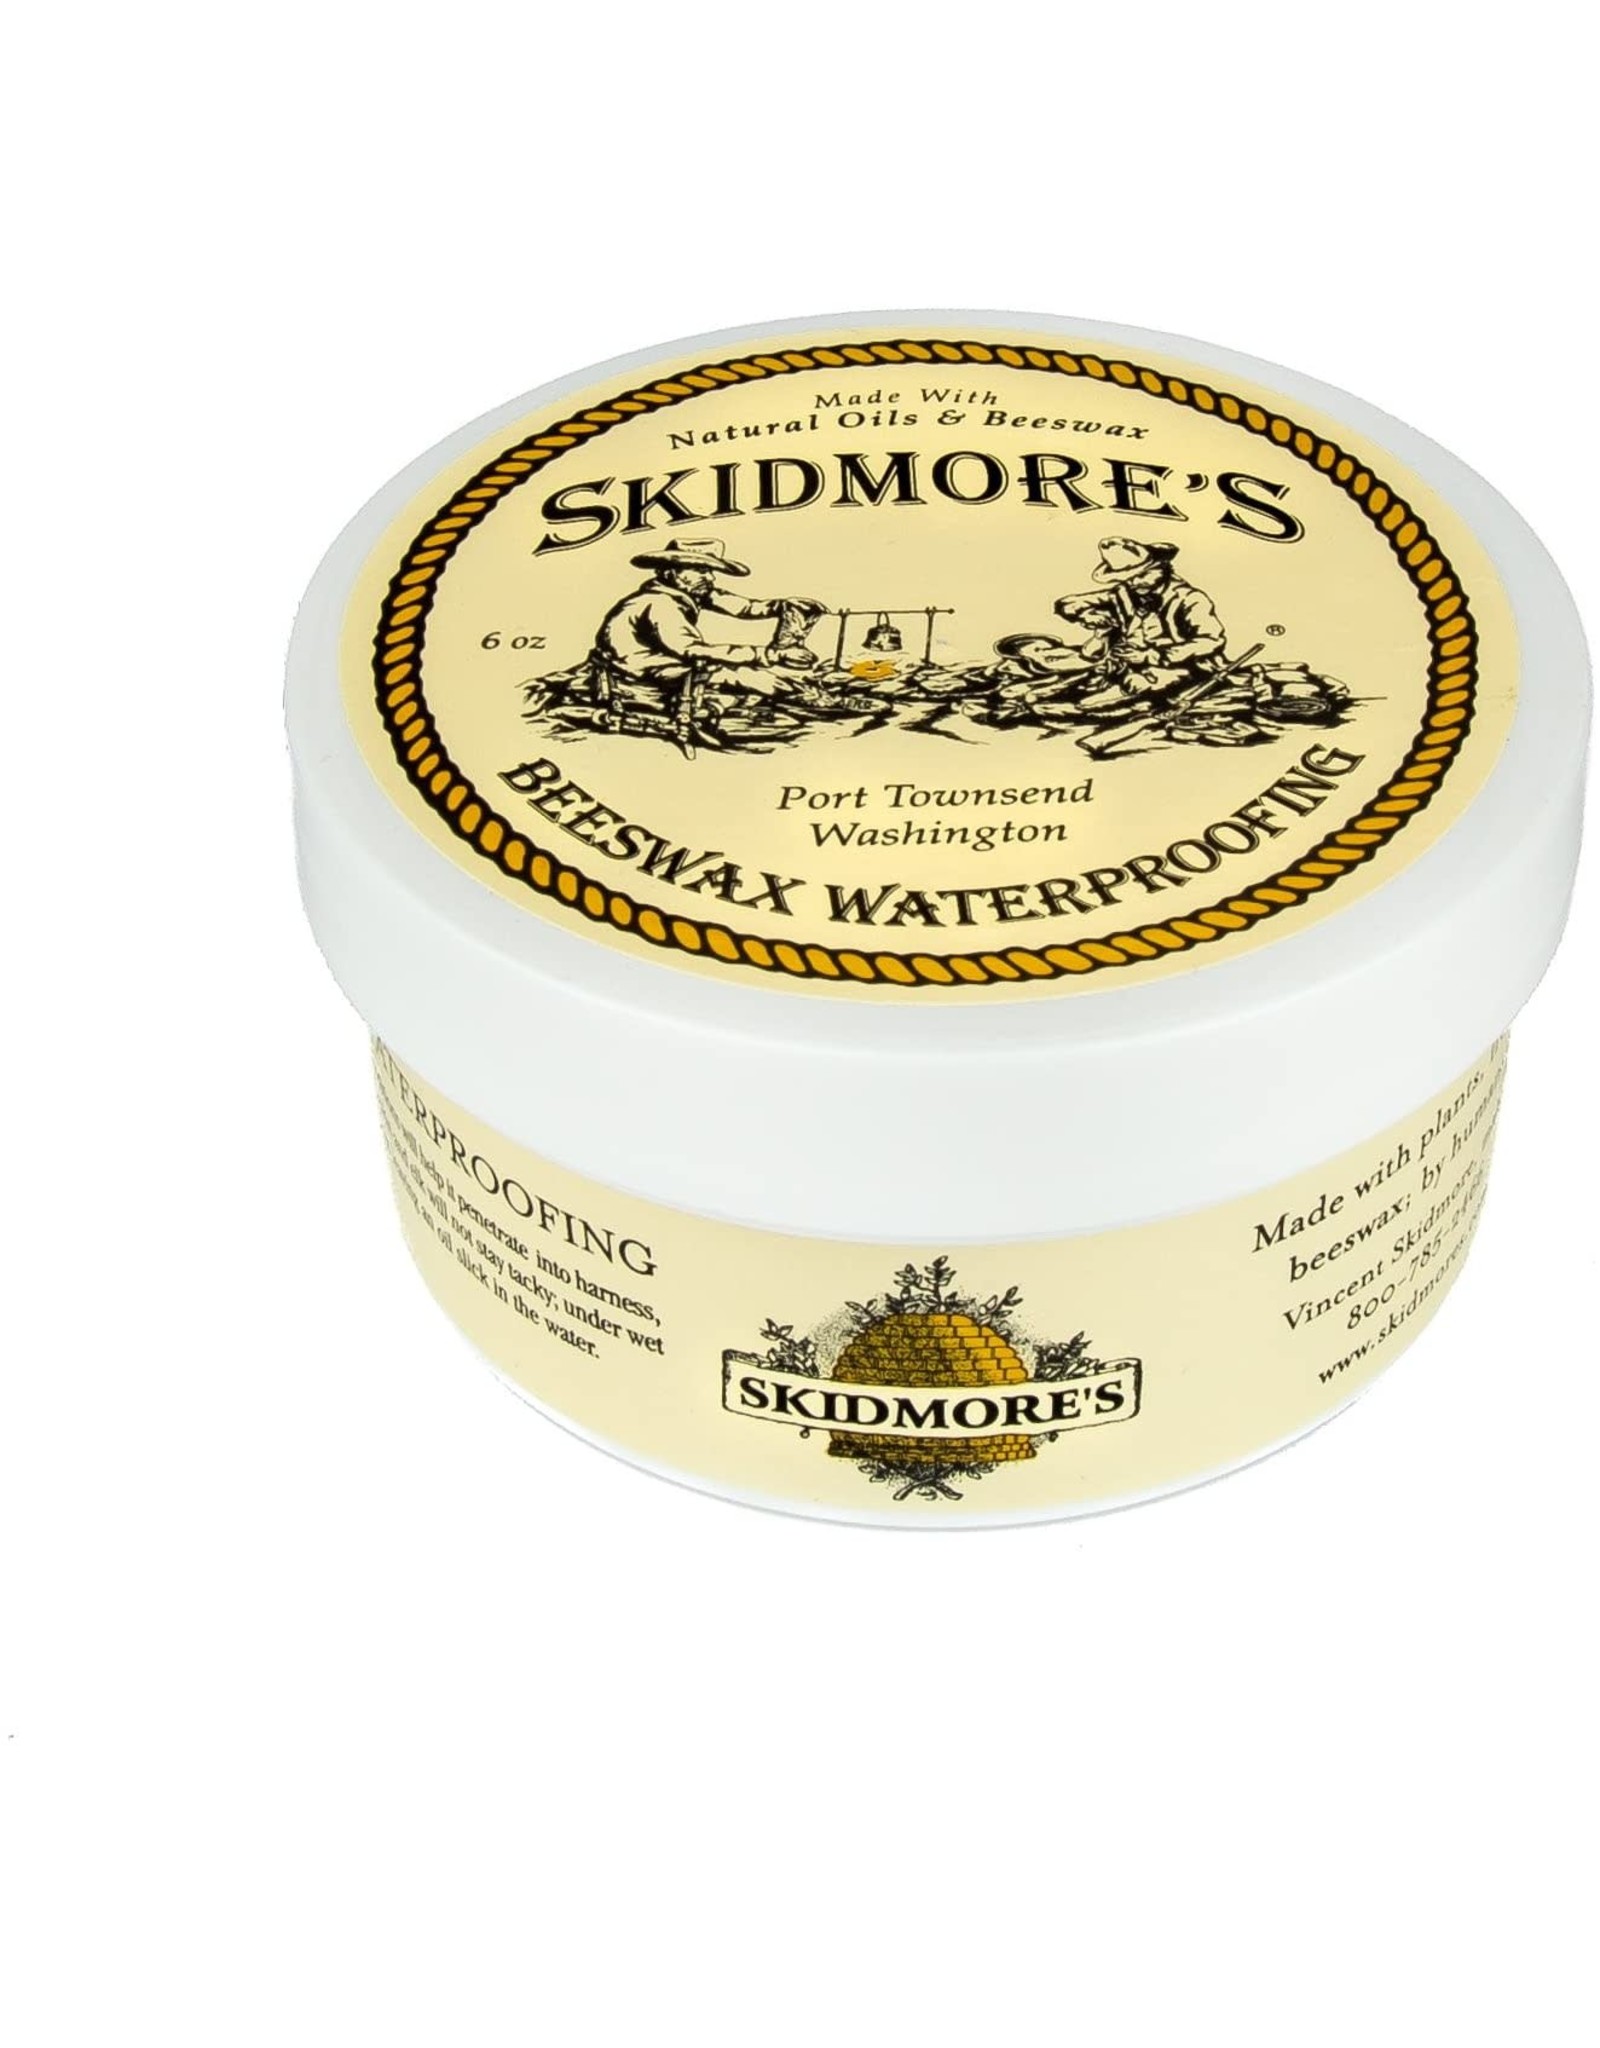 Skidmore's Premium Beeswax Waterproofing 6oz.